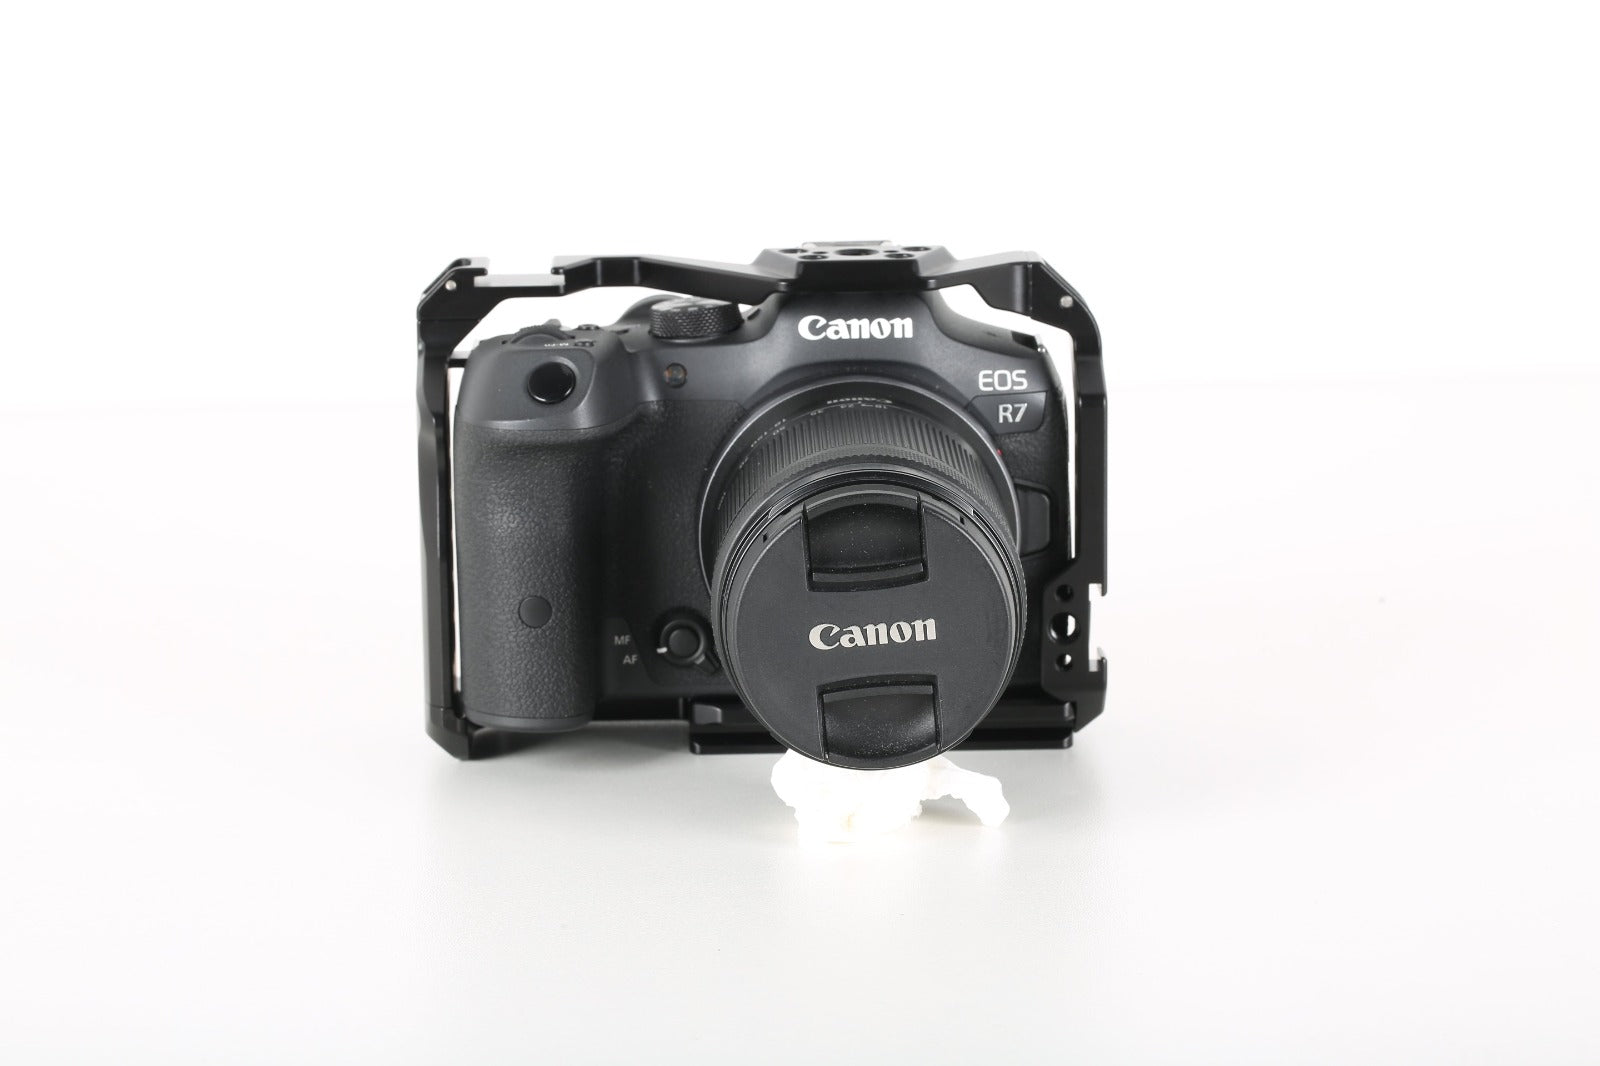 Leofoto Camera cage for Canon EOS R7